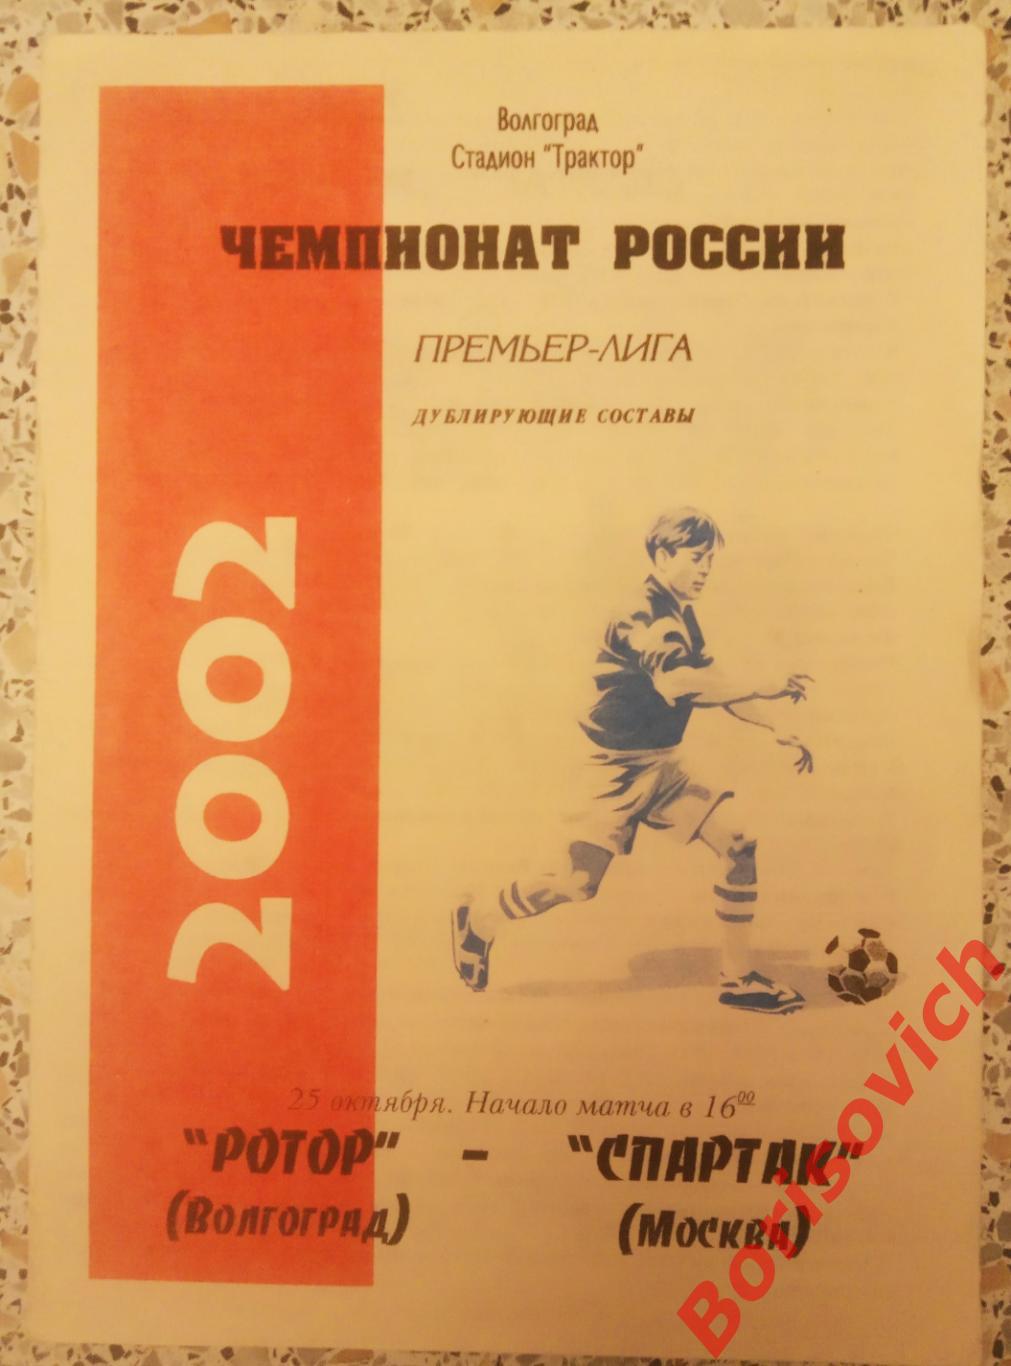 Ротор Волгоград - Спартак Москва 25-10-2002 Дублирующие составы